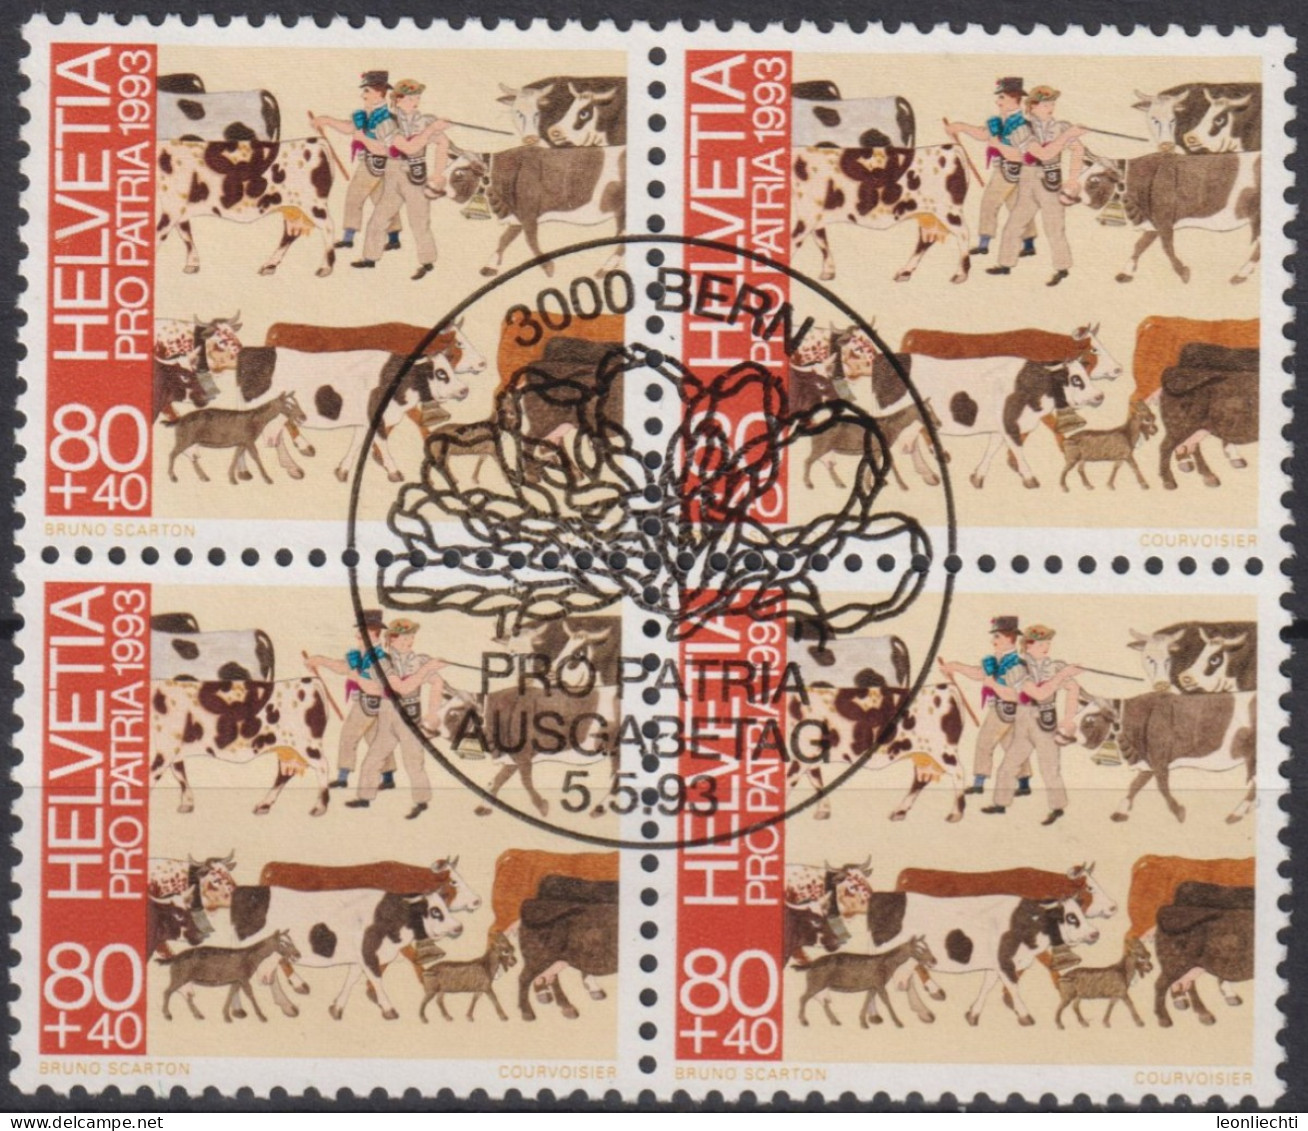 1993 Schweiz Pro Patria, Volkskunst, Poya Alpaufzug ⵙ Zum:CH B241, Mi:CH 1504, Yt:CH 1432 - Usati